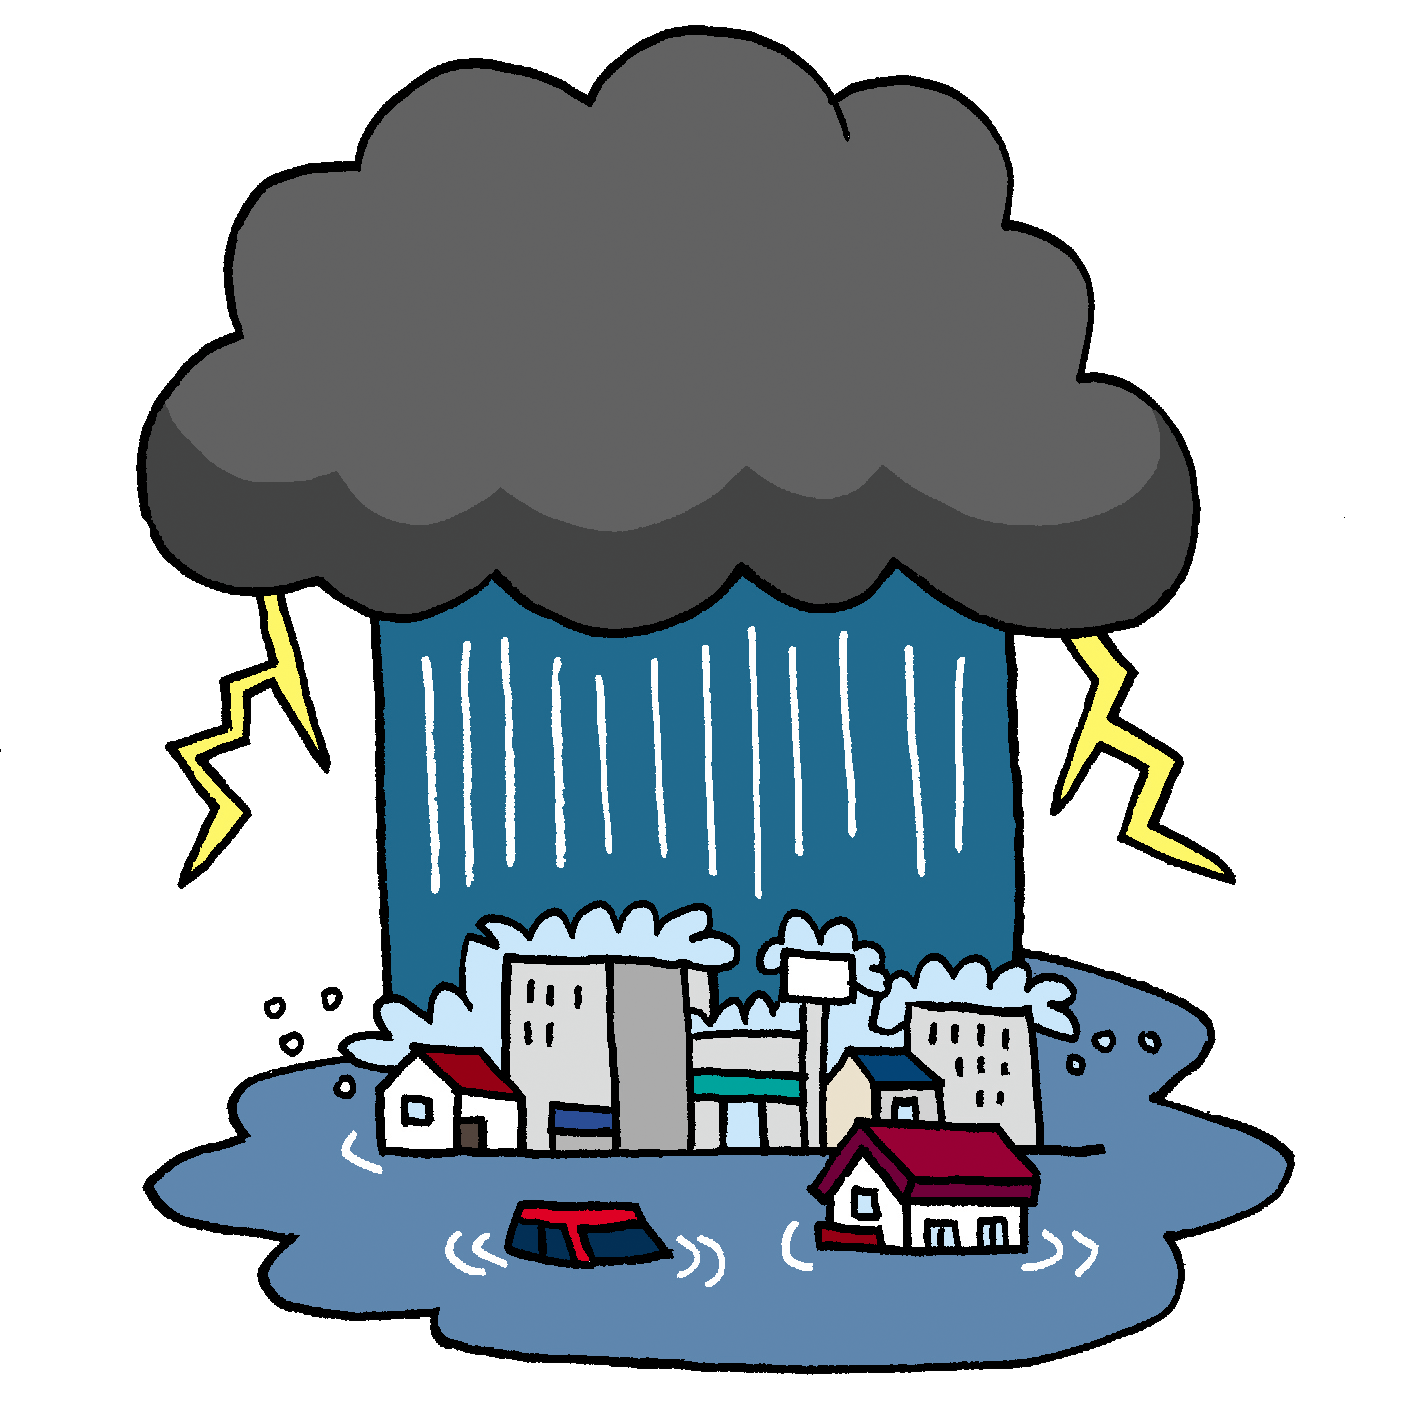 防災無料イラスト 雨雲レーダーと豪雨のイラスト T Co Jxvdb23dvf 今日も東北地方を中心に大雨が予想されているようで心配です 大きな被害が出ないように願うばかりです T Co Plg1crhkuh Twitter